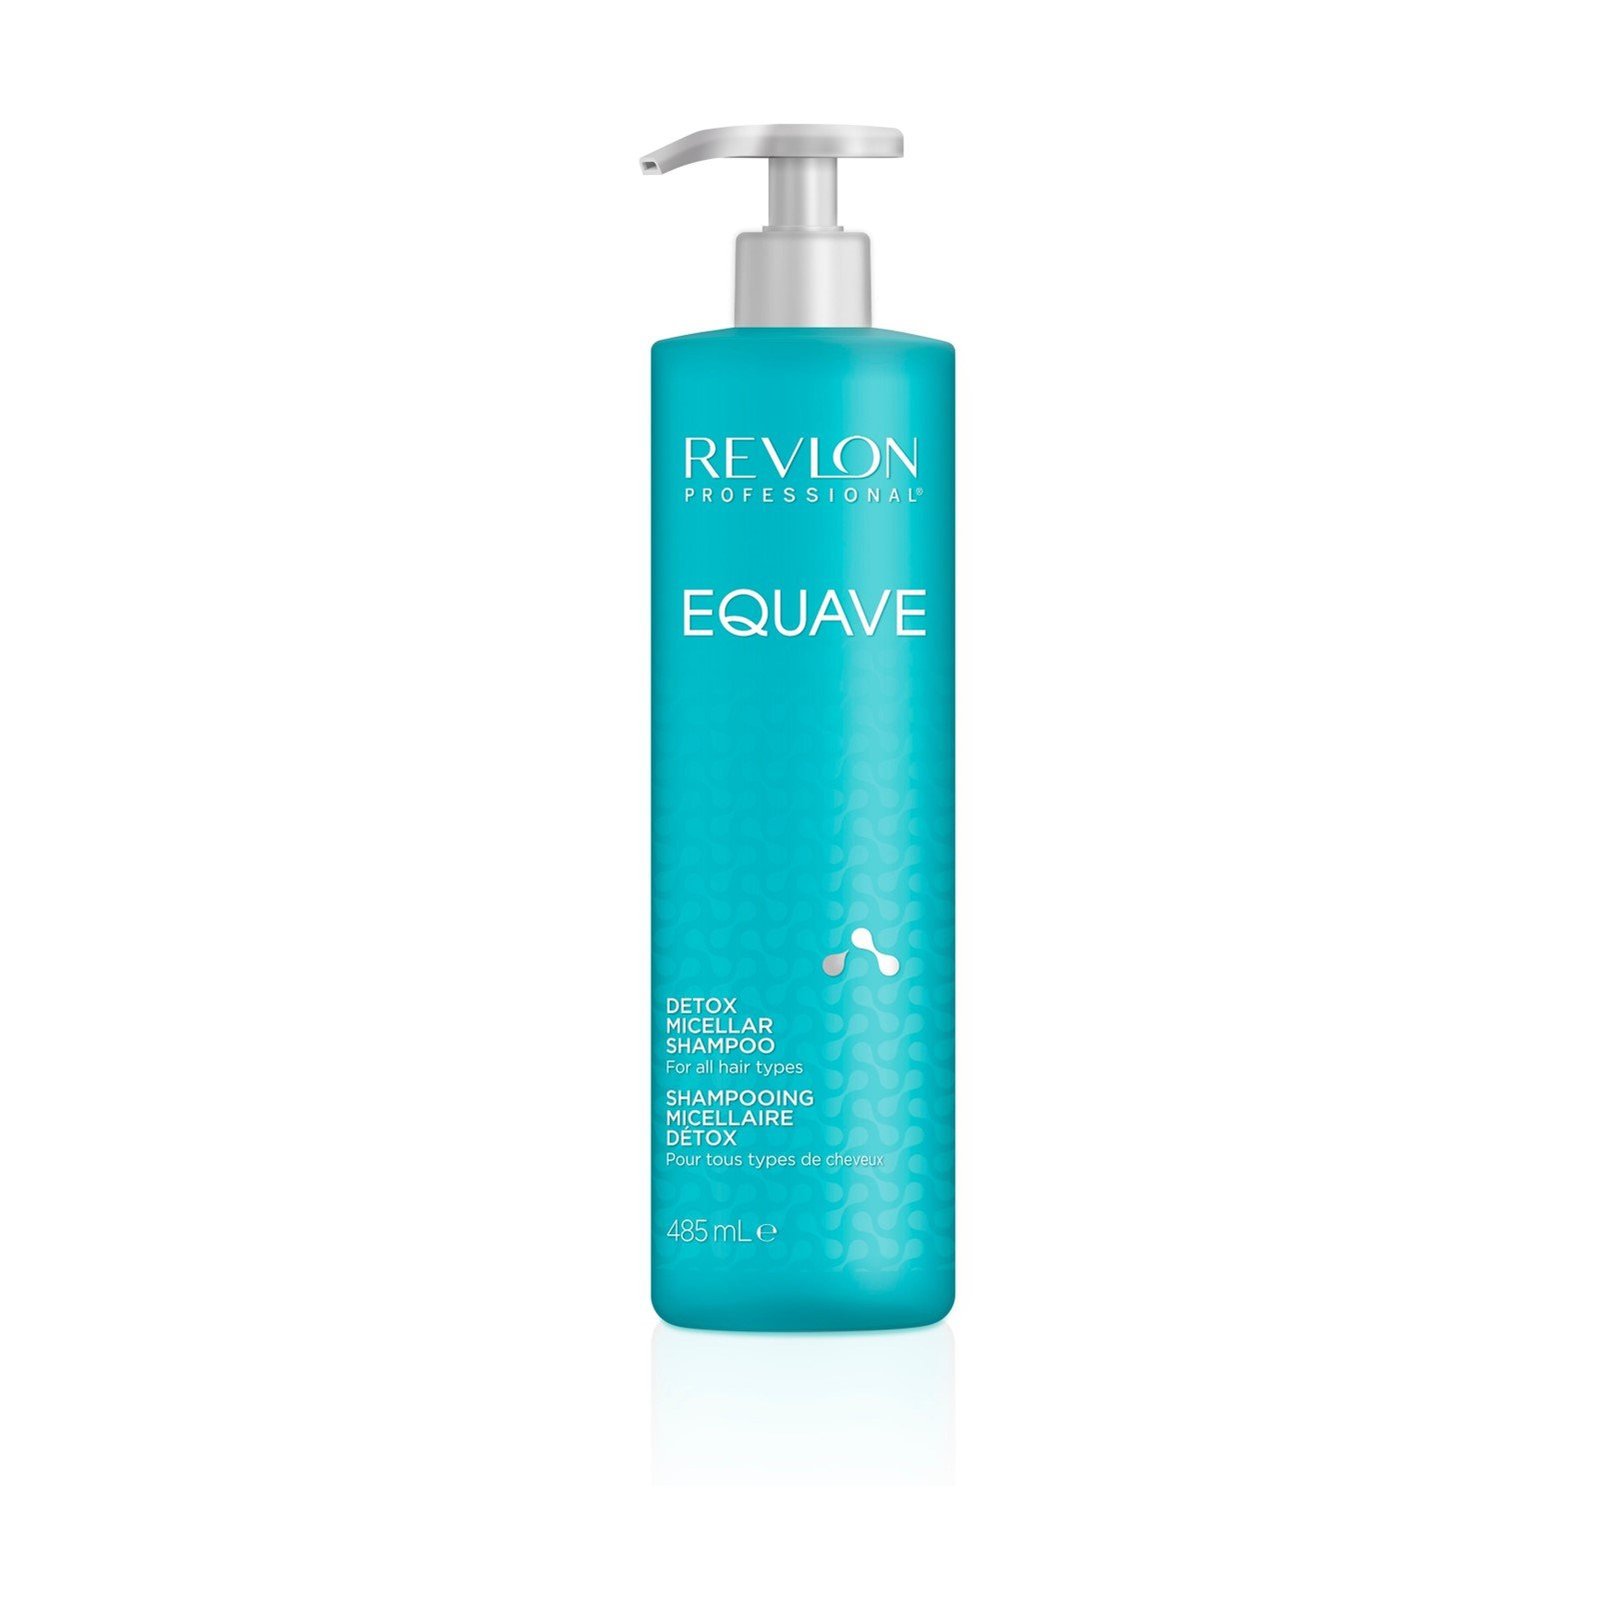 Revlon Professional Equave Detox Micellar Shampoo 485ml (16.3 fl oz)